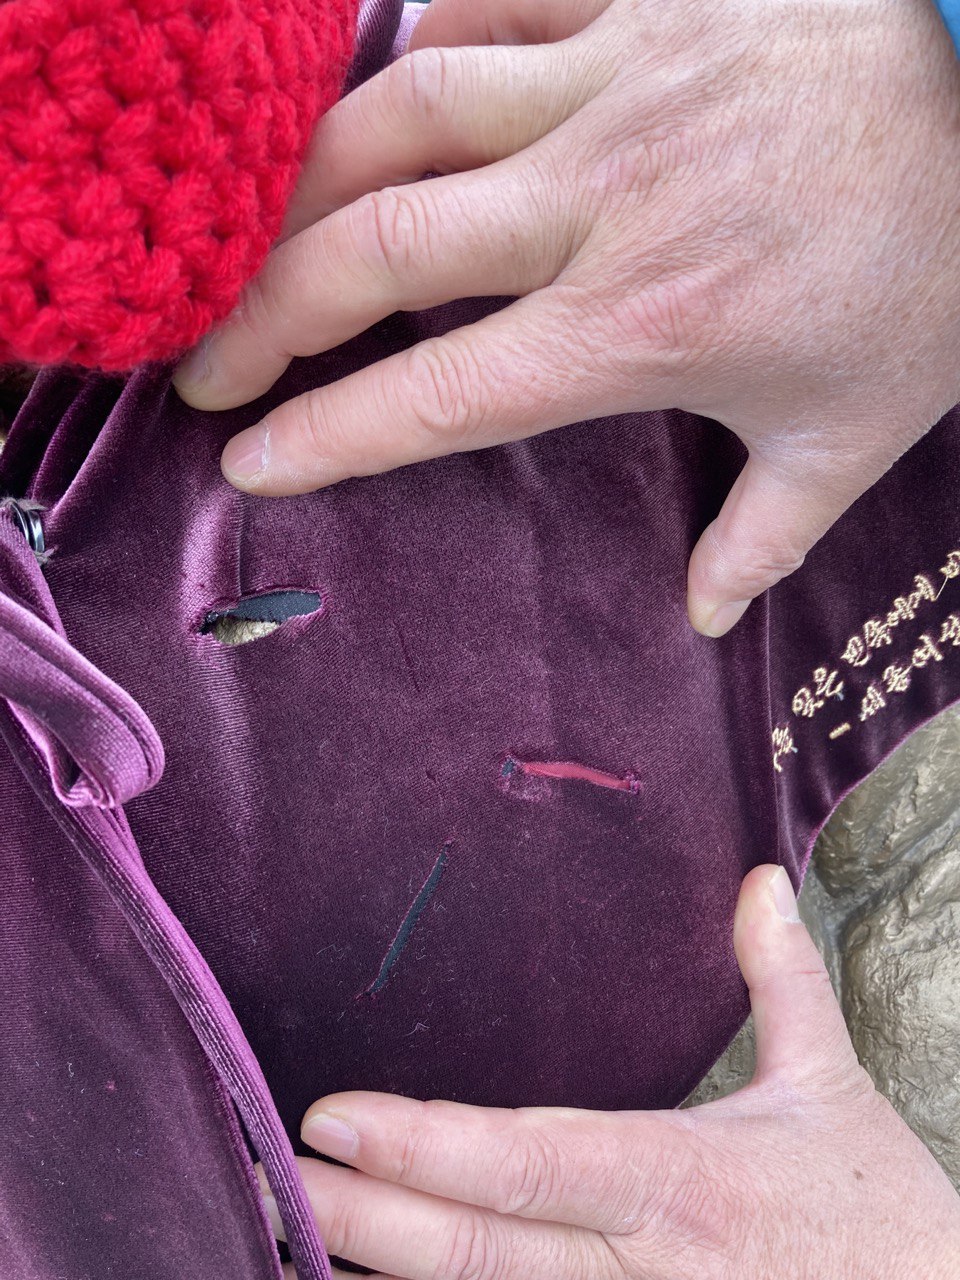 세종시 호수공원에 설치된 ‘평화의 소녀상’에 겨울나기를 위해 입혀놓은 망토가 예리한 칼로 훼손된 것으로 보이는 정황이 발견됐다. 세종참여자치시민연대 제공